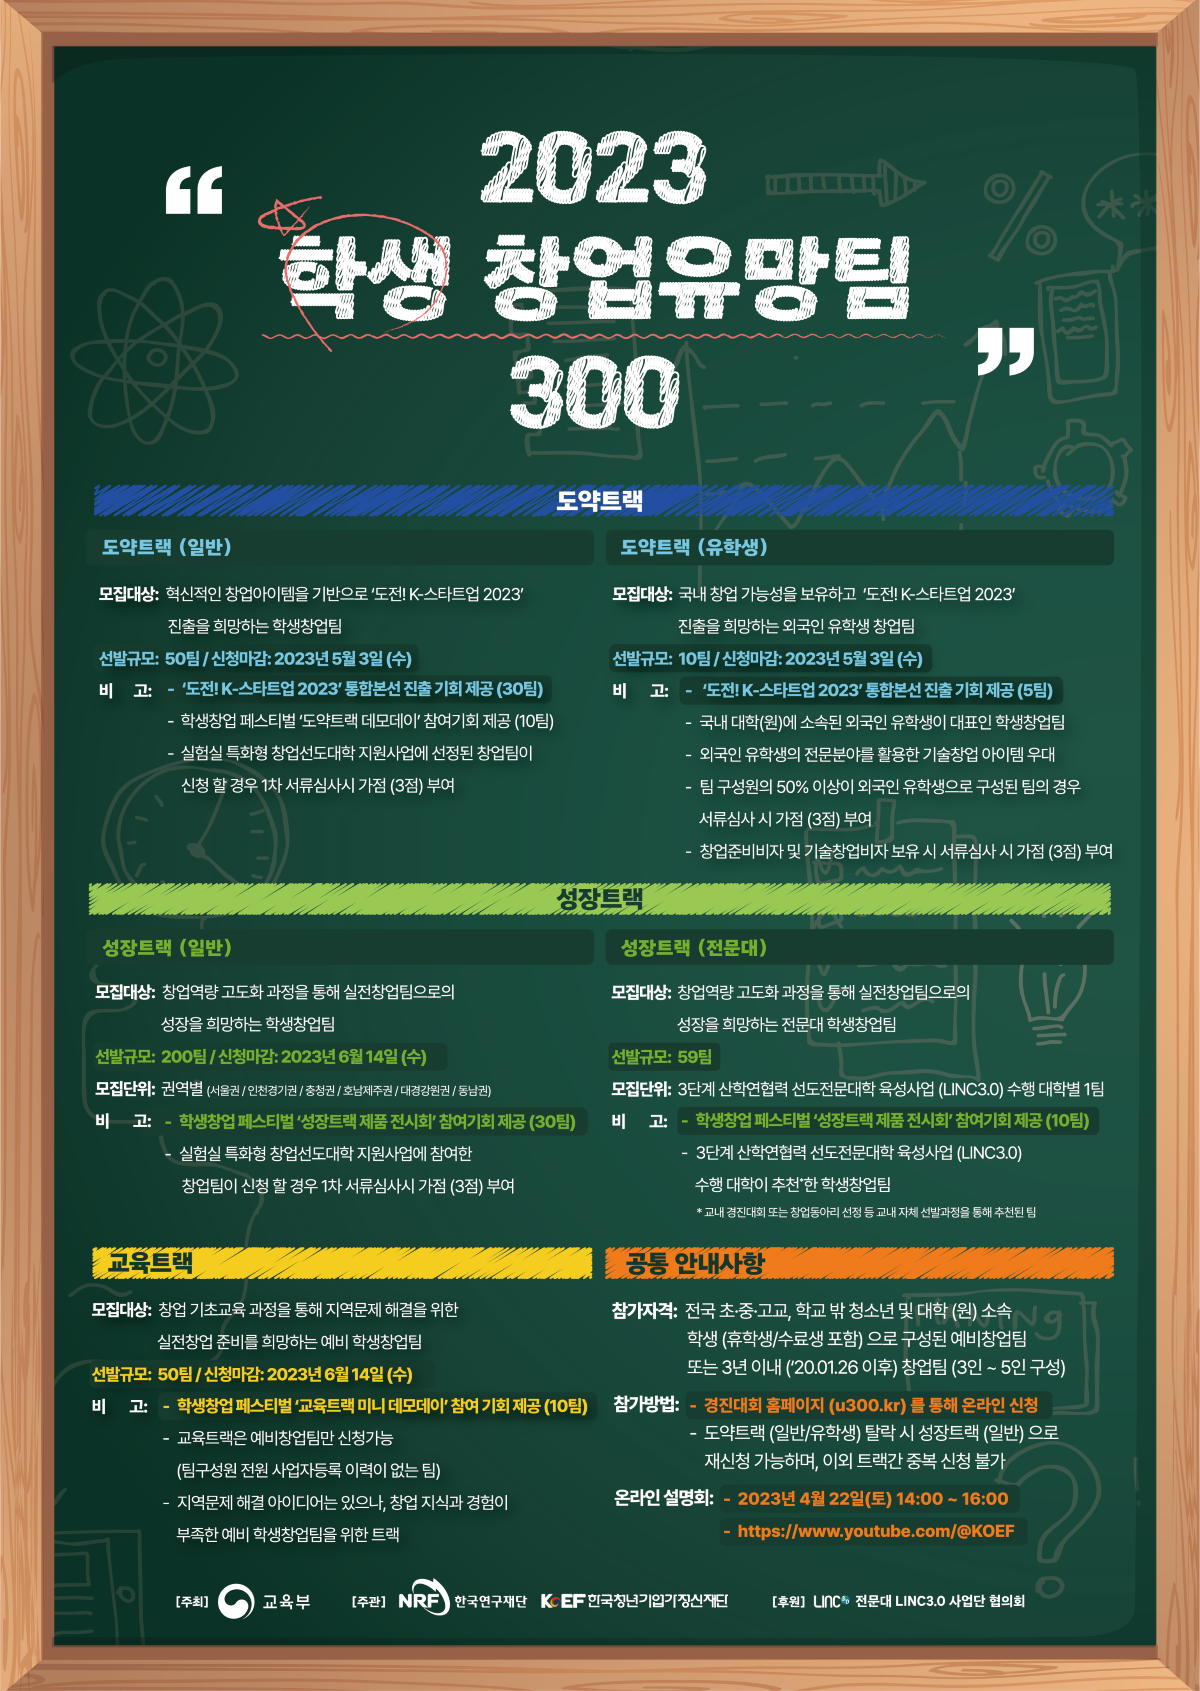 “2023 학생 창업 유망팀 300”